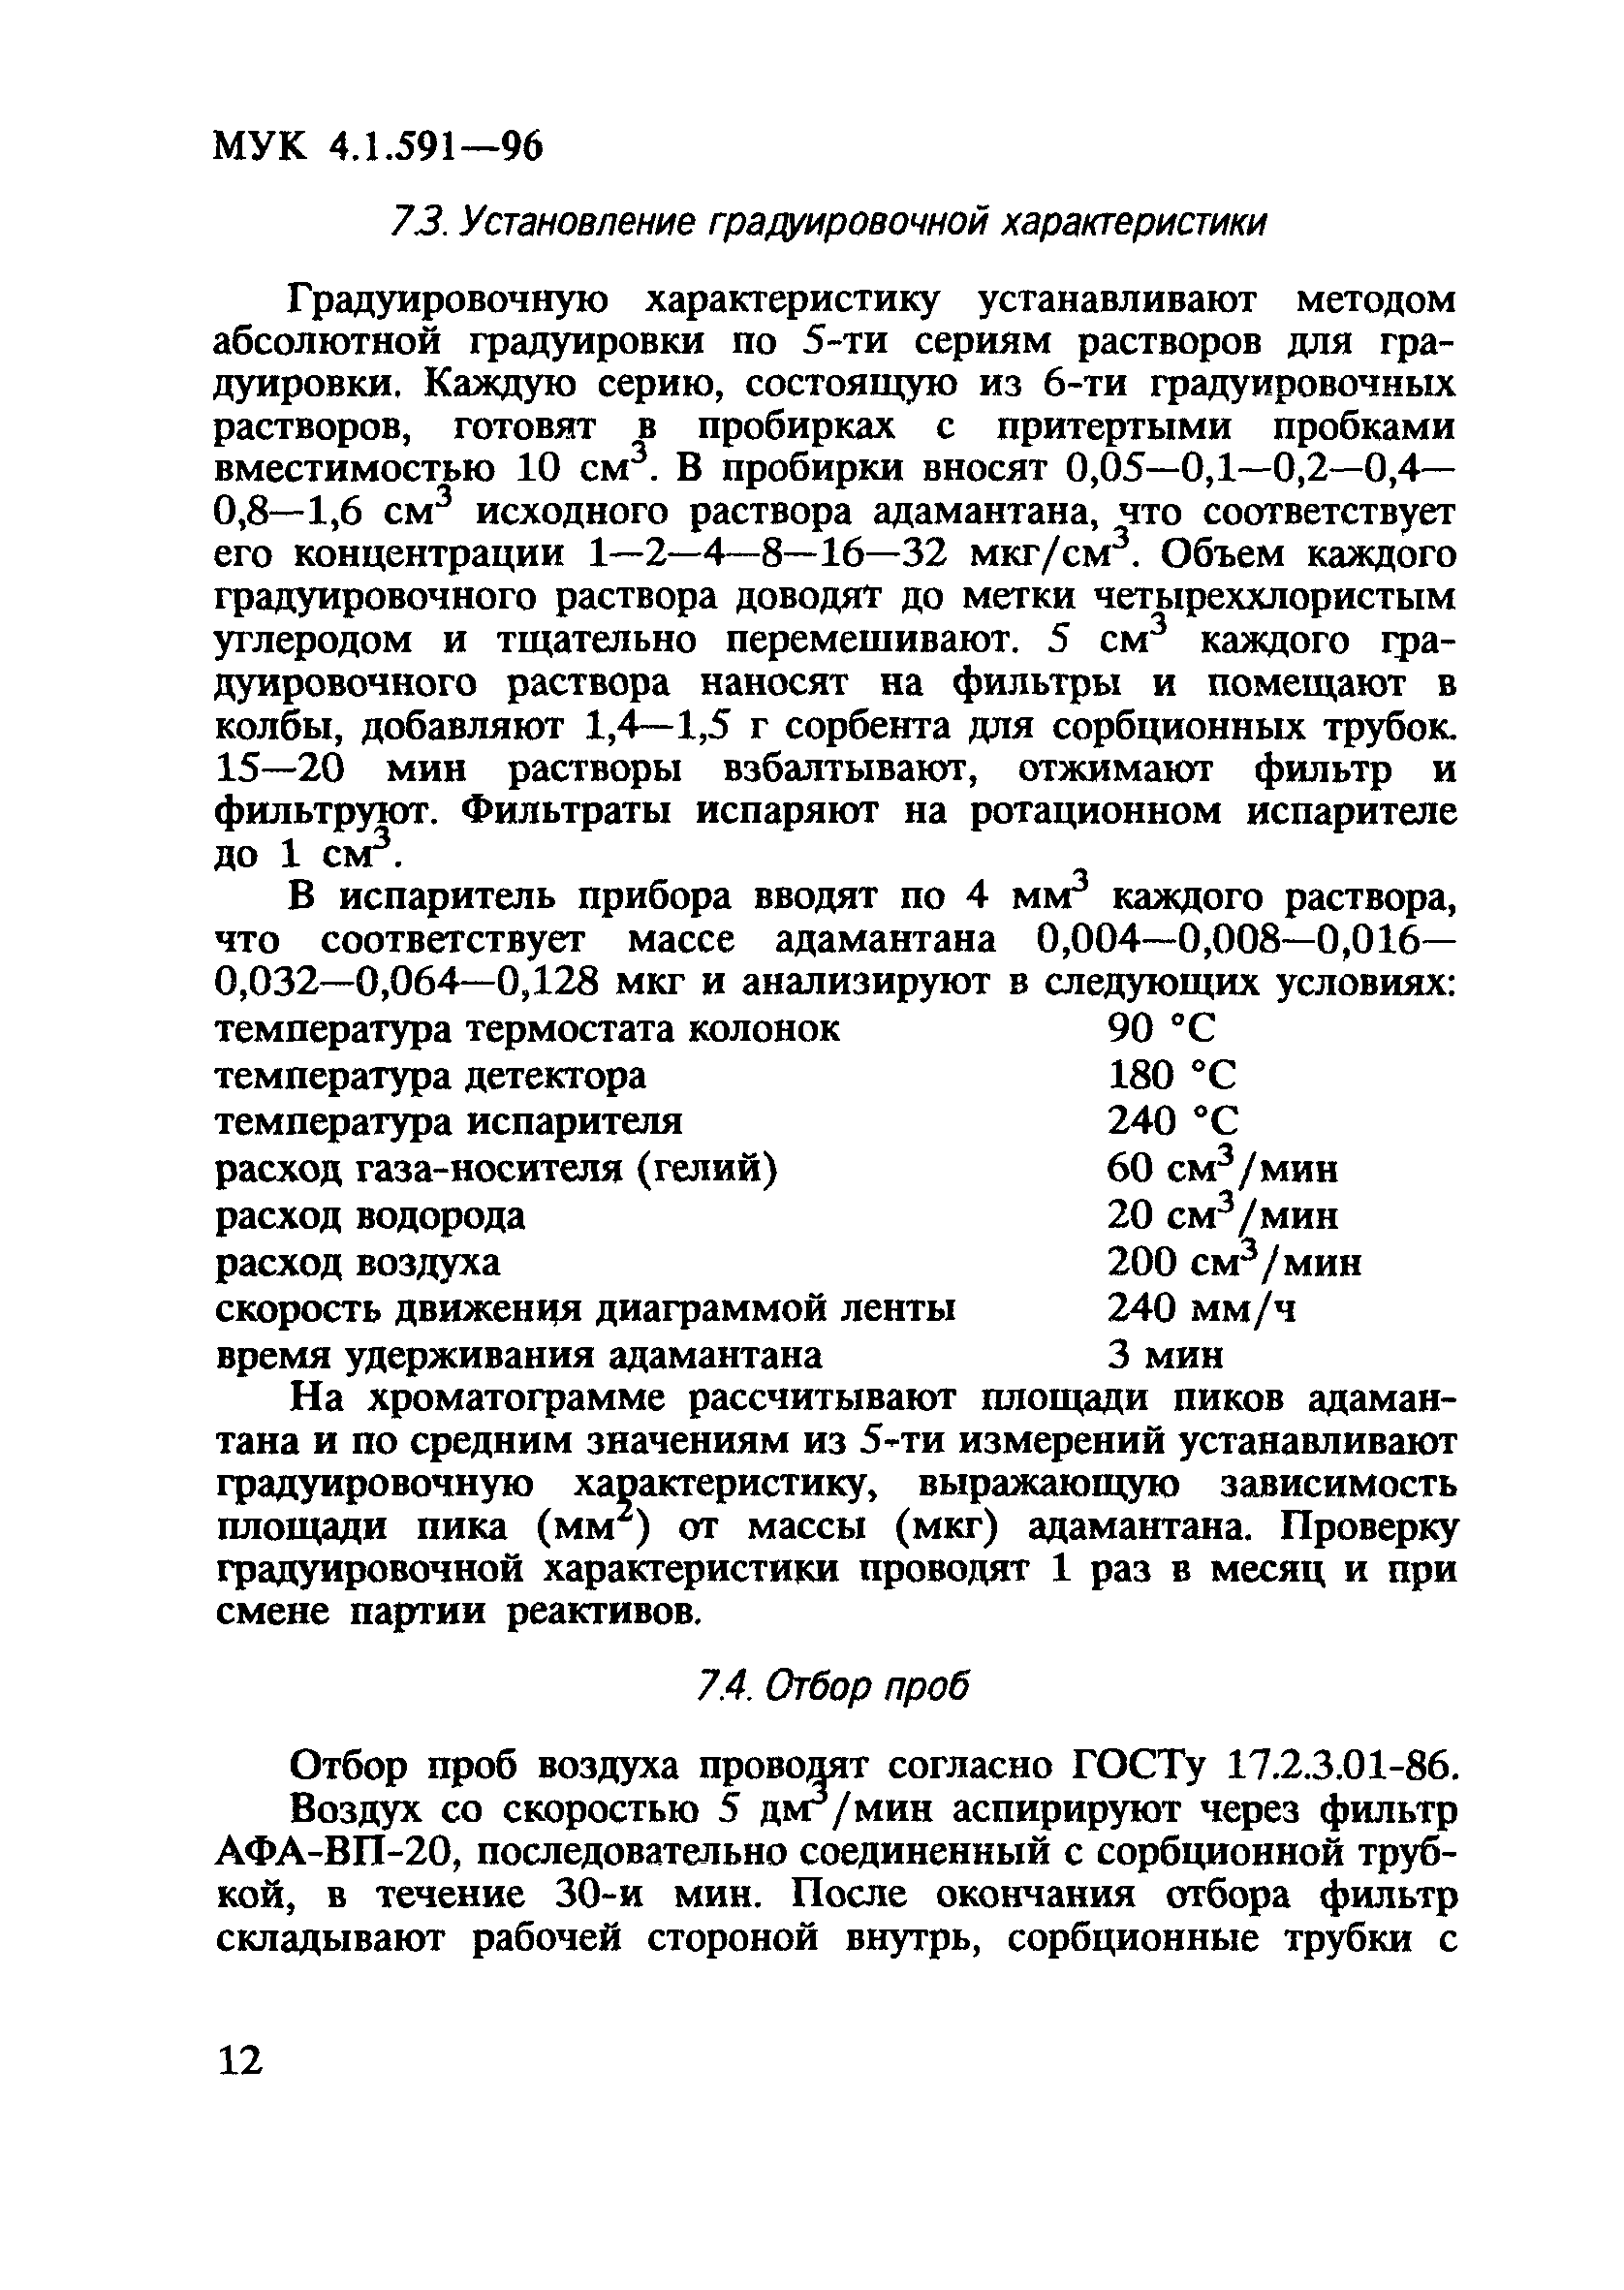 МУК 4.1.591-96